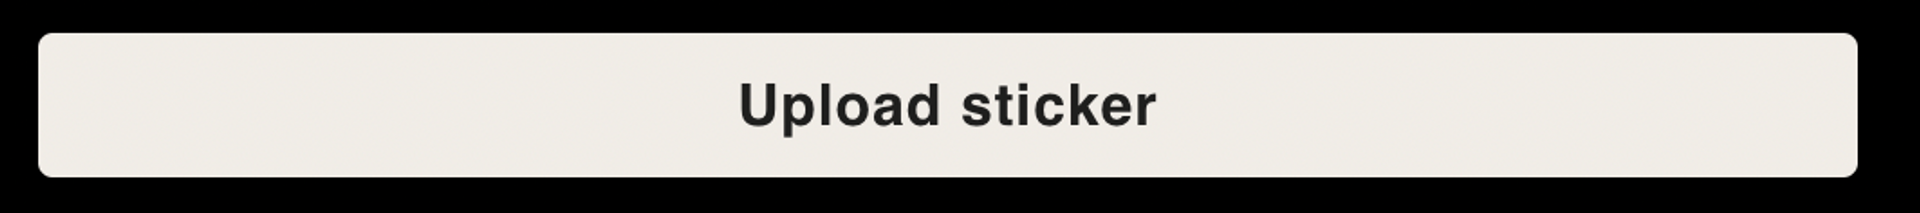 upload sticker button